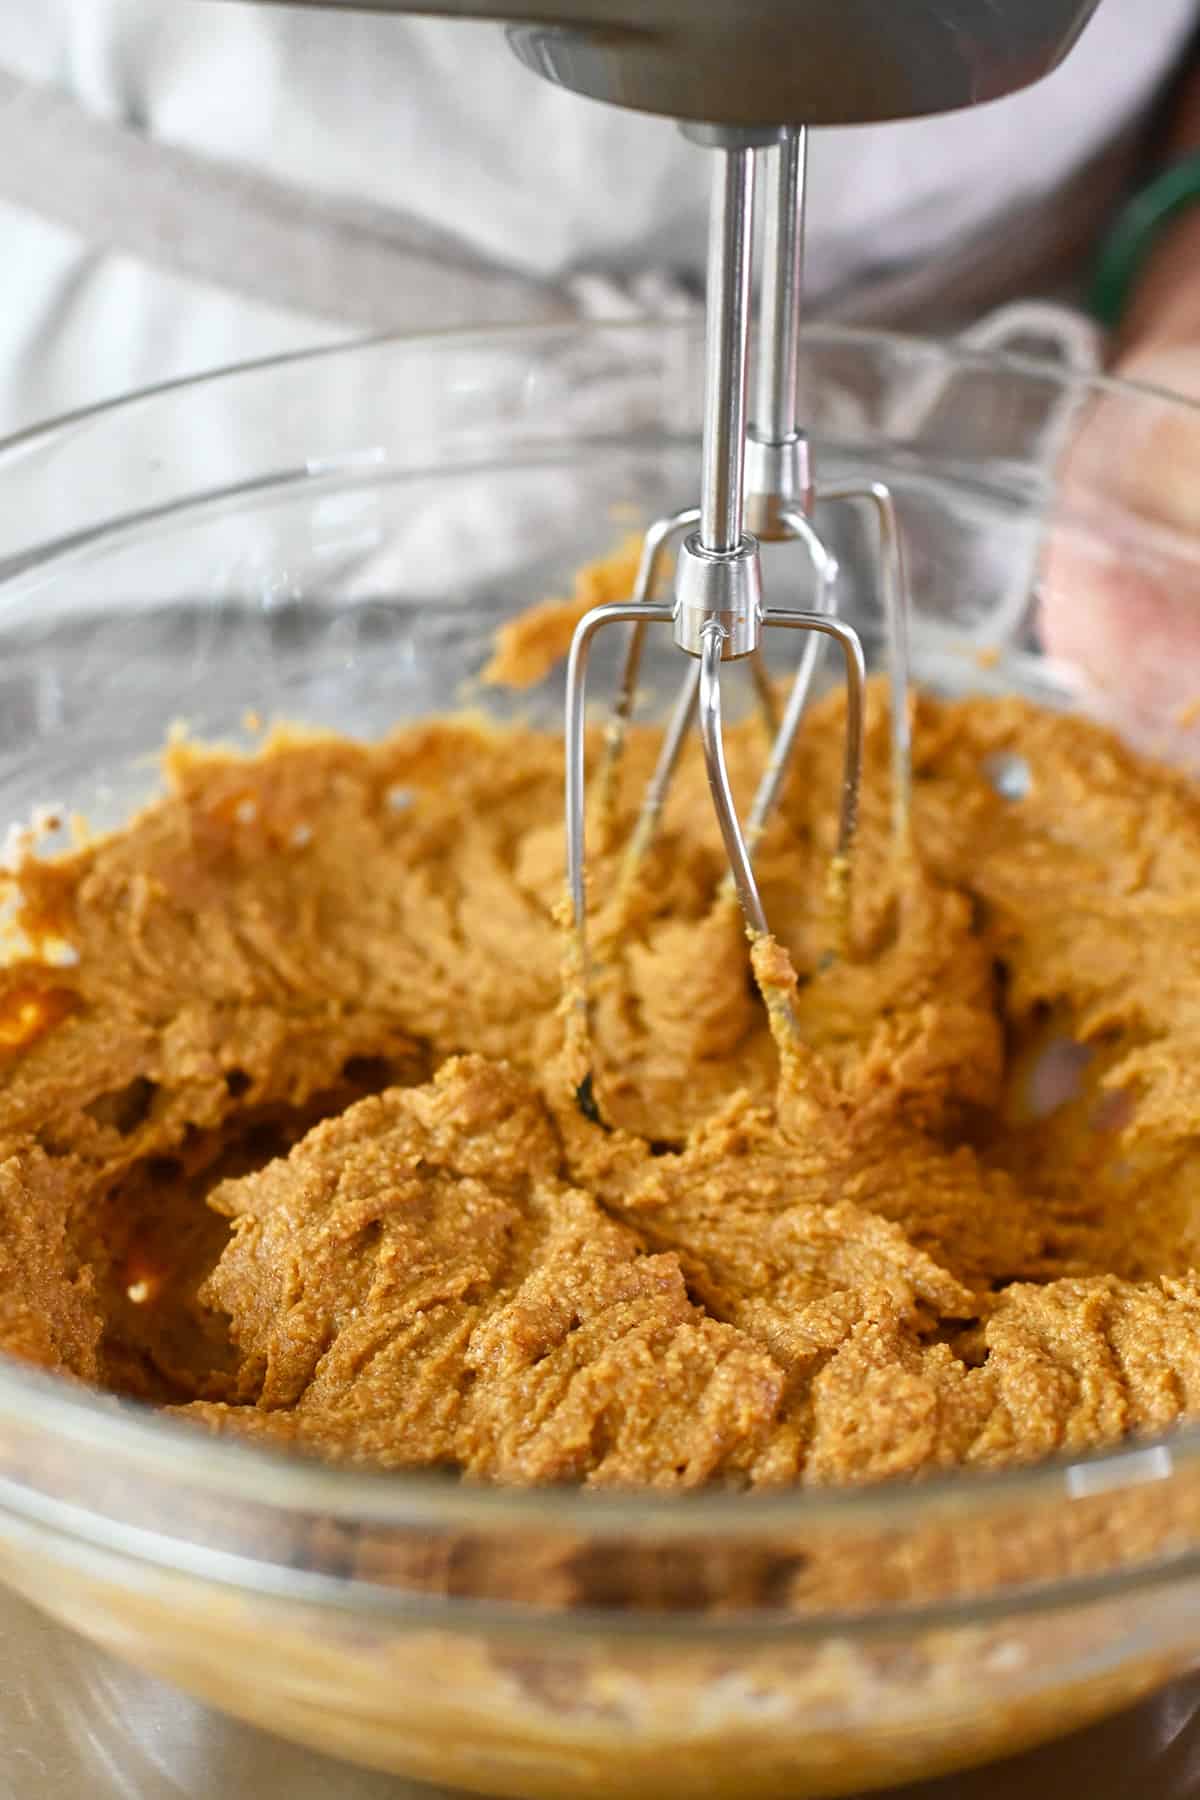 A closeup photo showing a hand mixer blending the batter to make paleo pumpkin cookies.